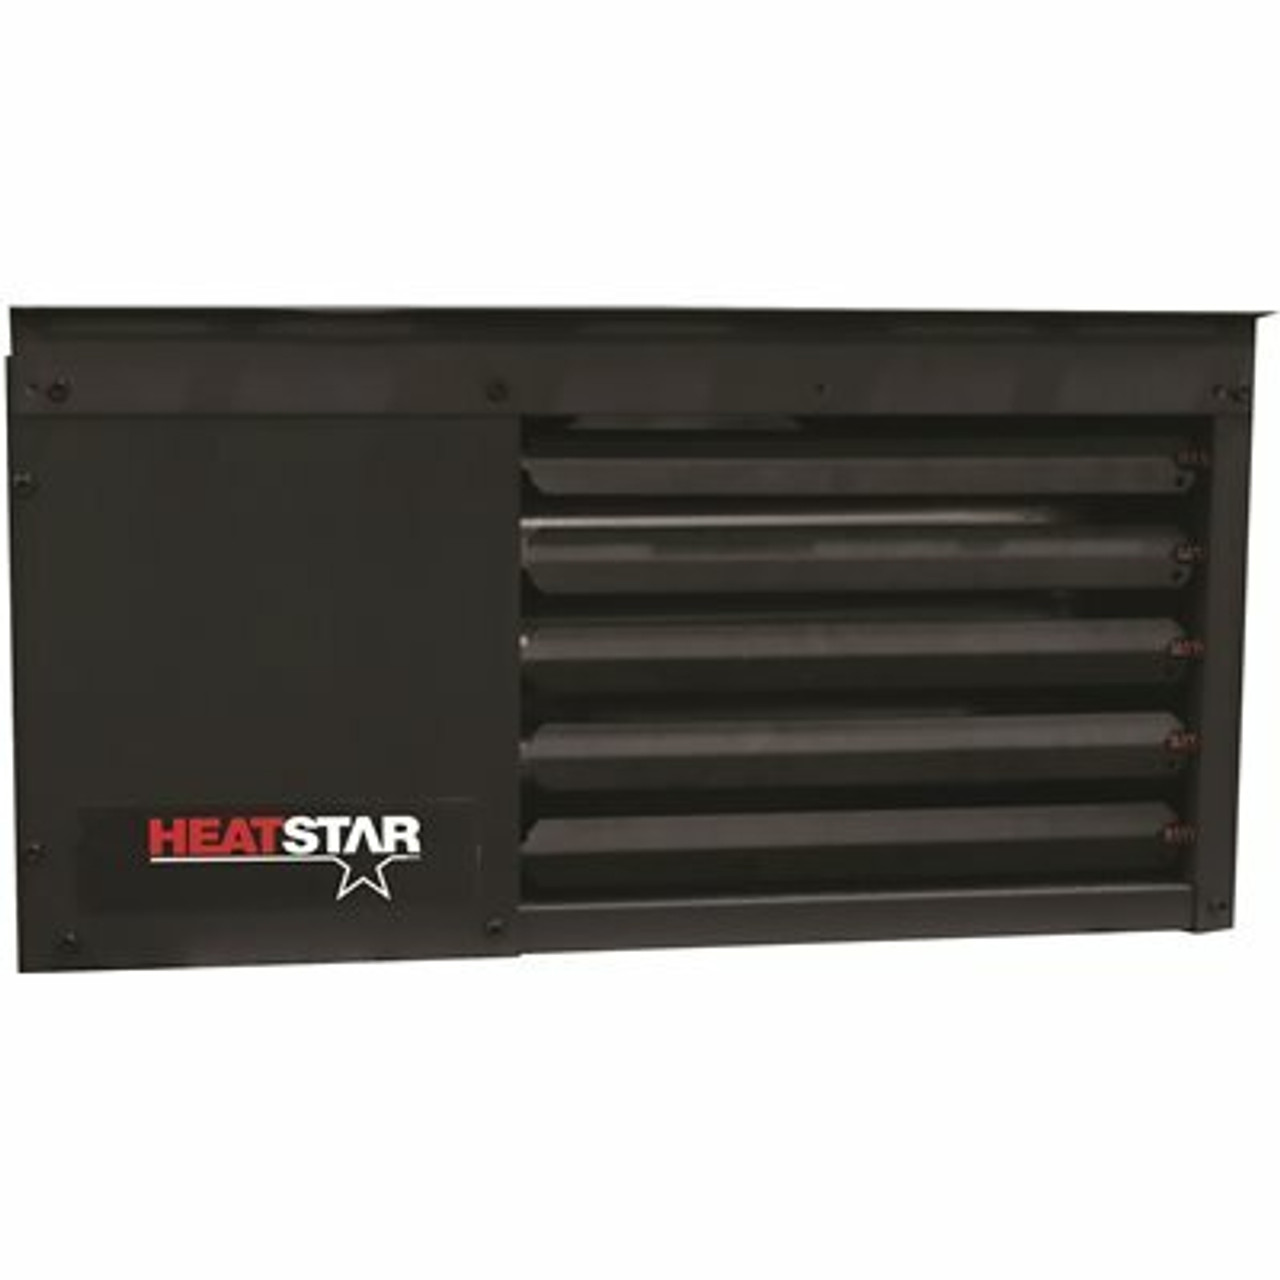 Heatstar Hsu80Ng Dark Grey